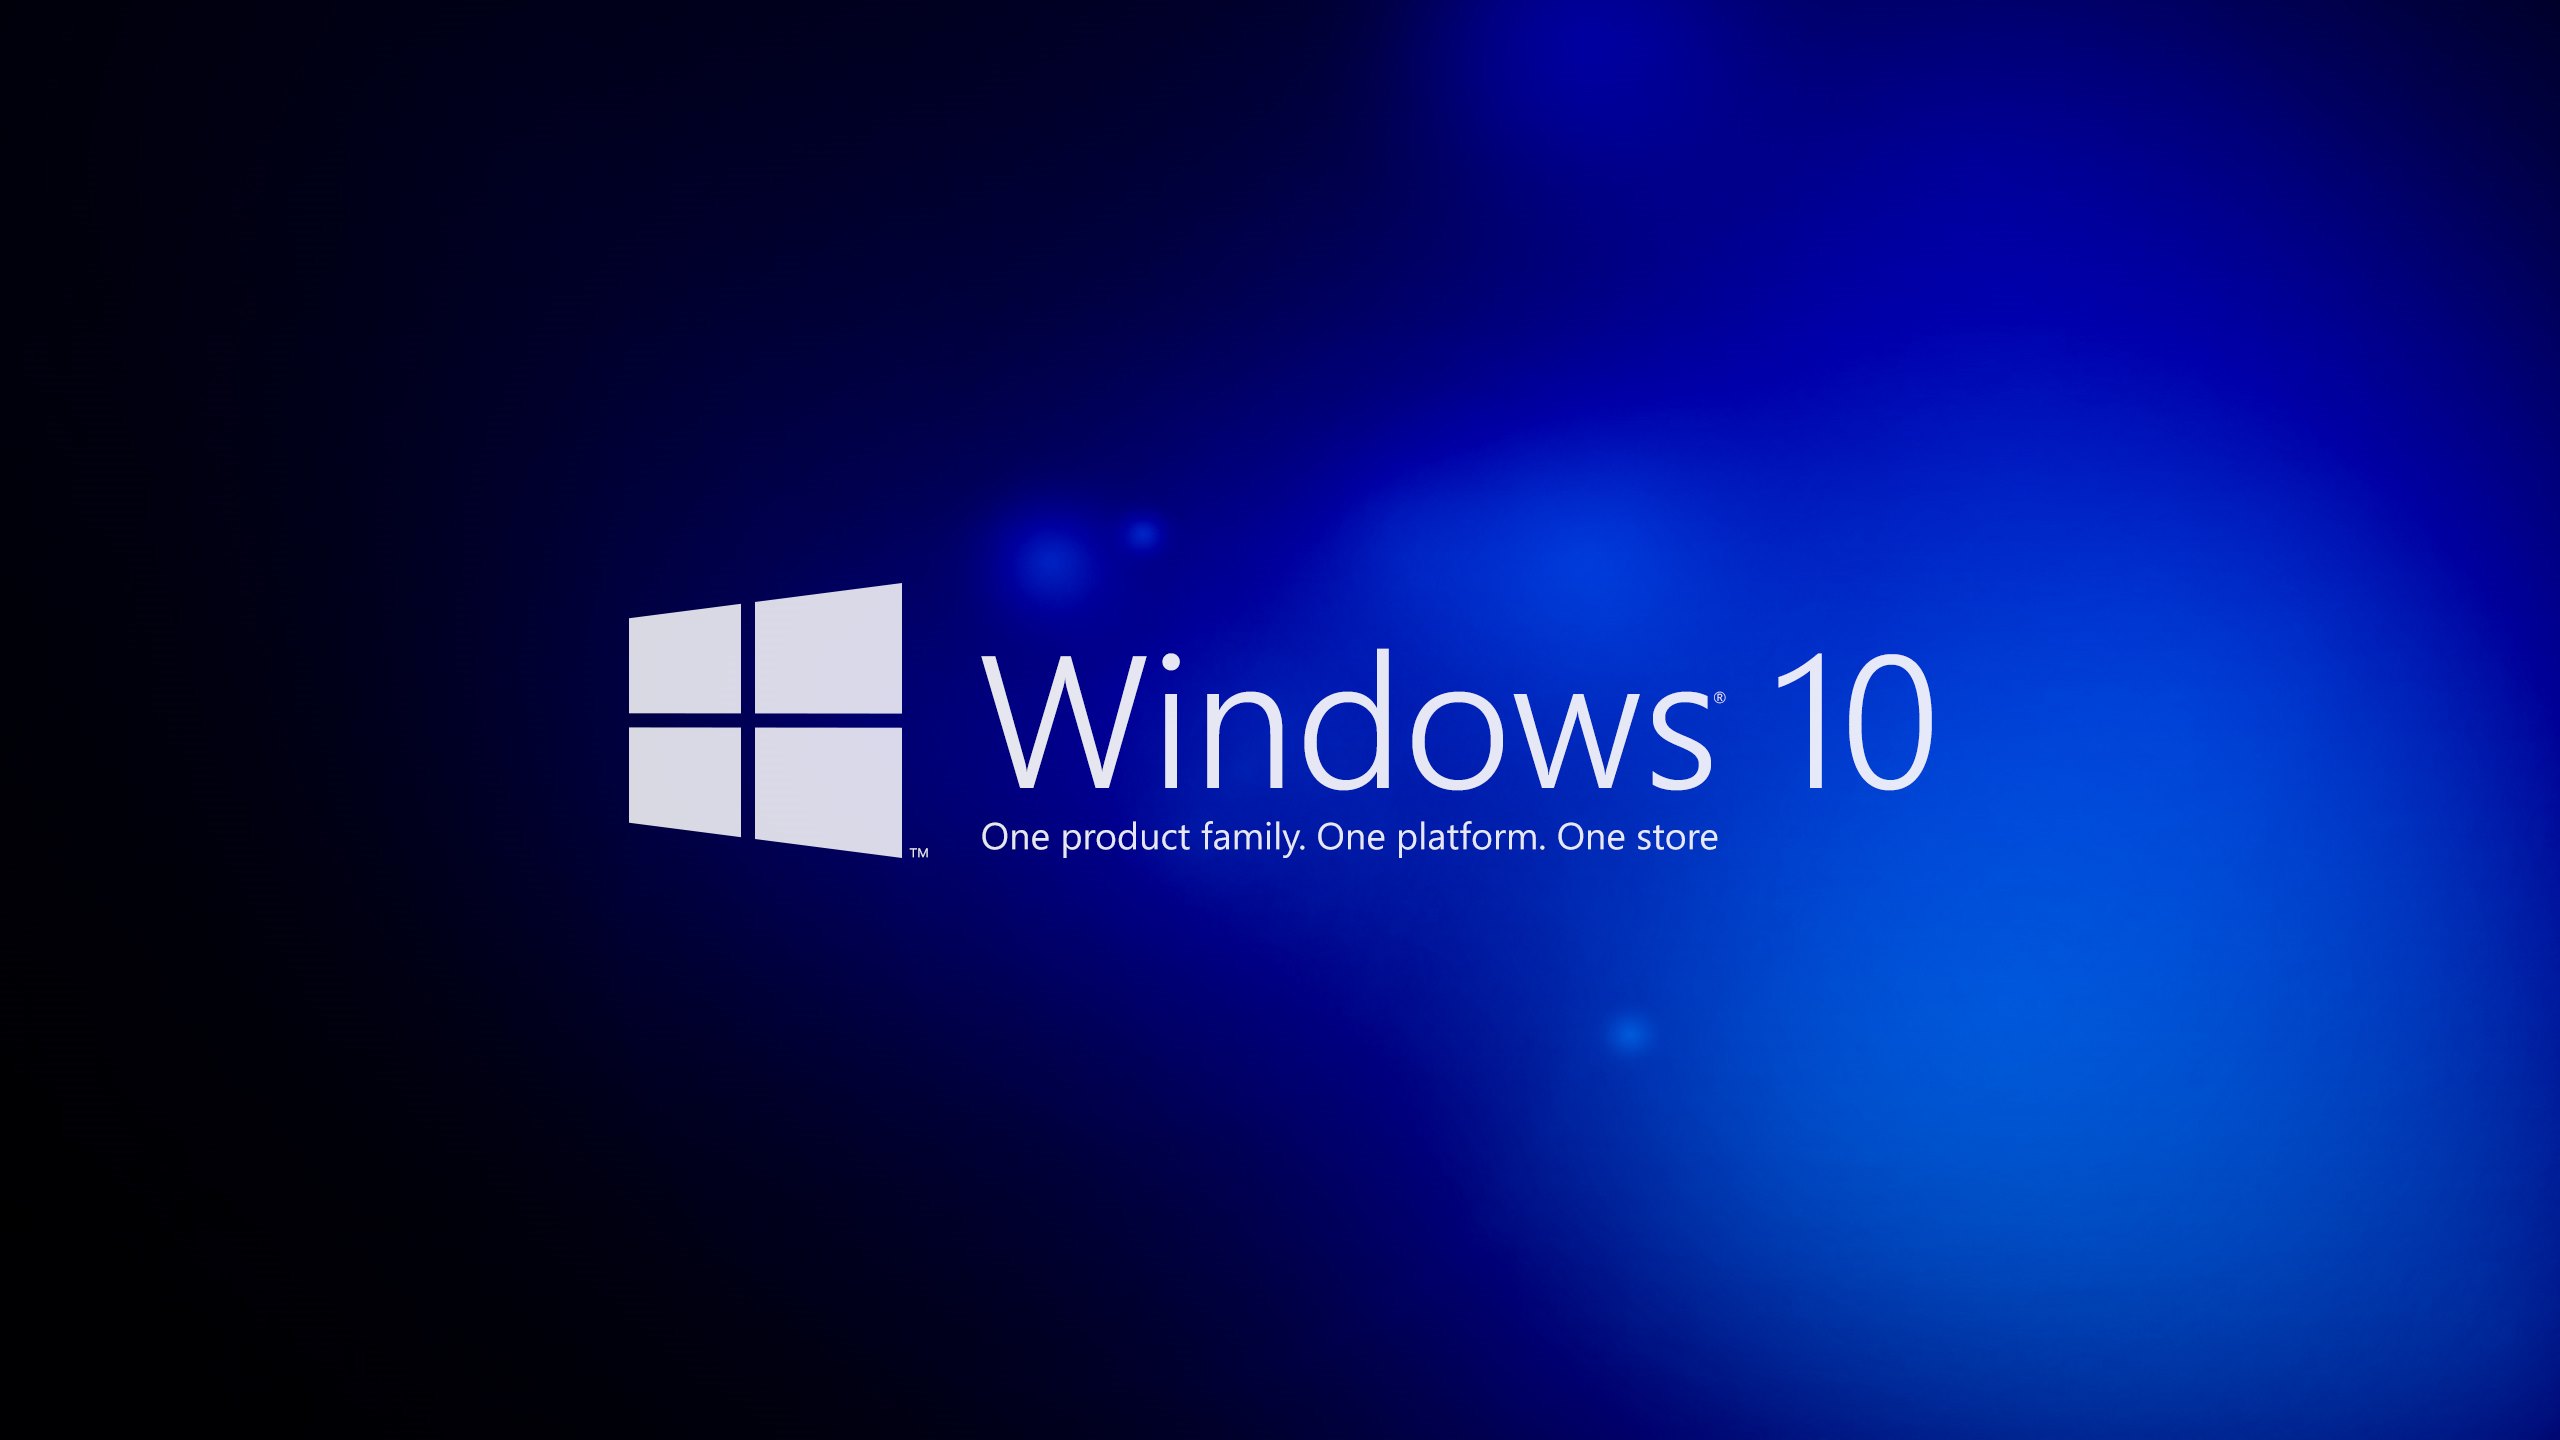 Vẫn có thể nâng cấp miễn phí lên Windows 10 sau ngày 29/07